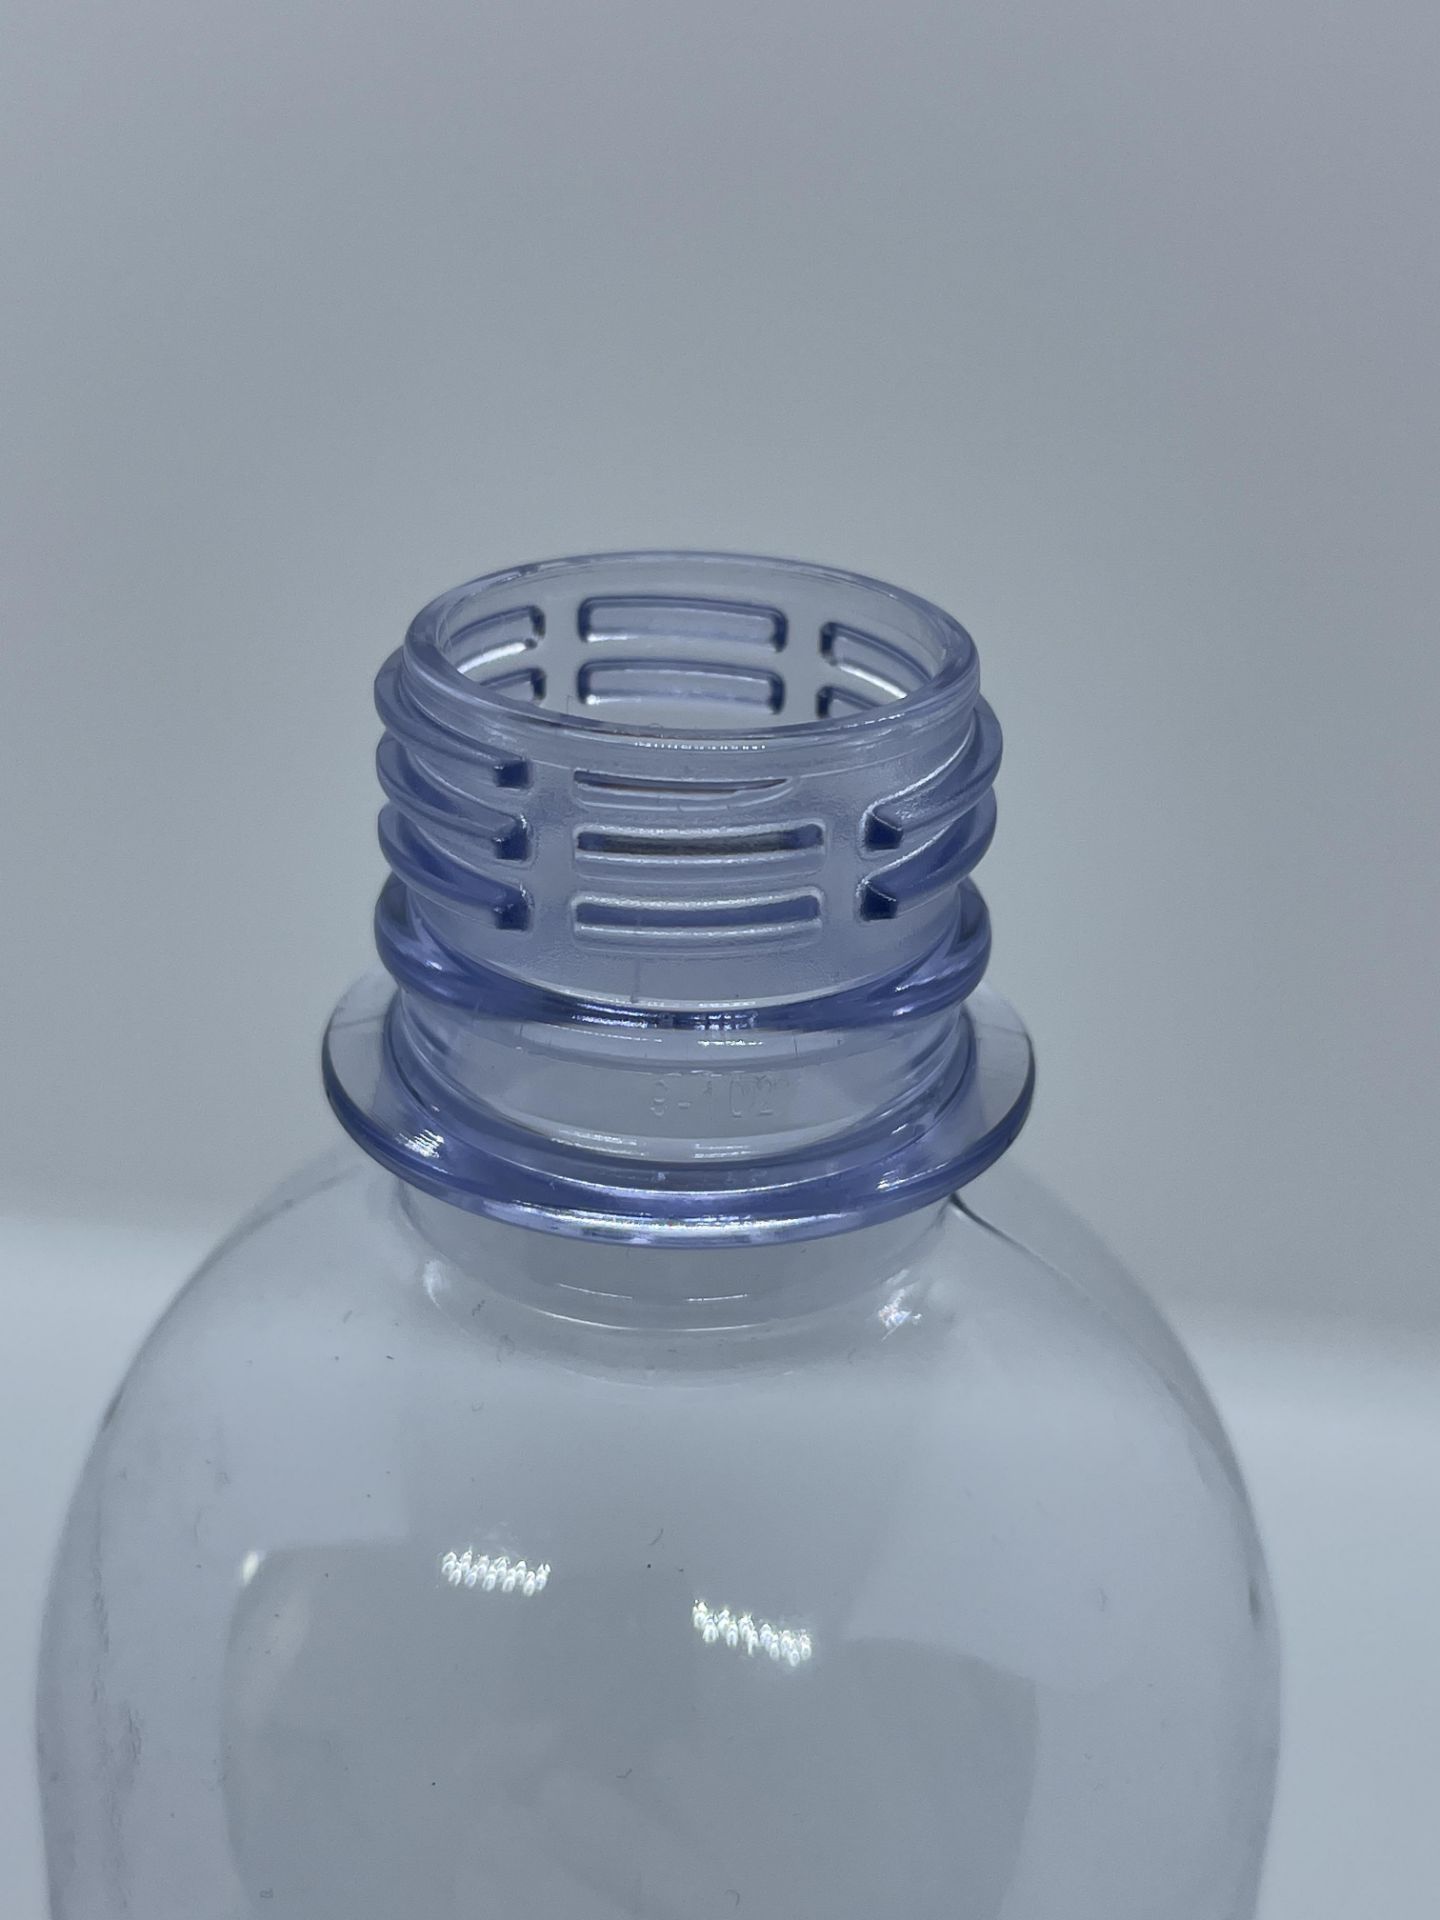 30,000 - 16 oz Empty Bullet Plastic Bottles, Neck Threading 28-410, 8" Tall, 2.5" Diameter - Image 7 of 8